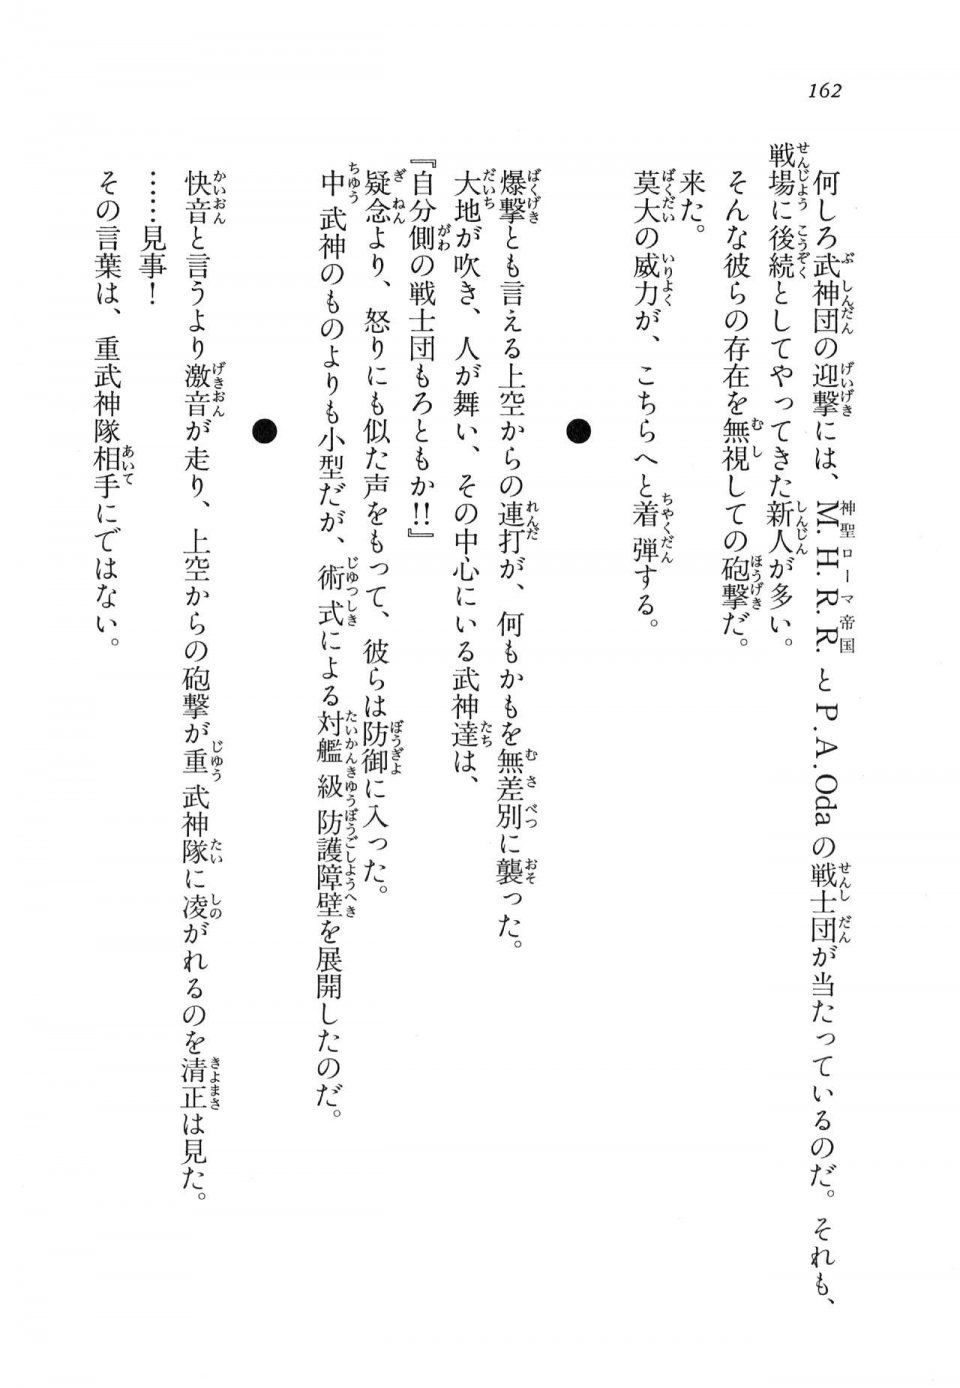 Kyoukai Senjou no Horizon LN Vol 11(5A) - Photo #162